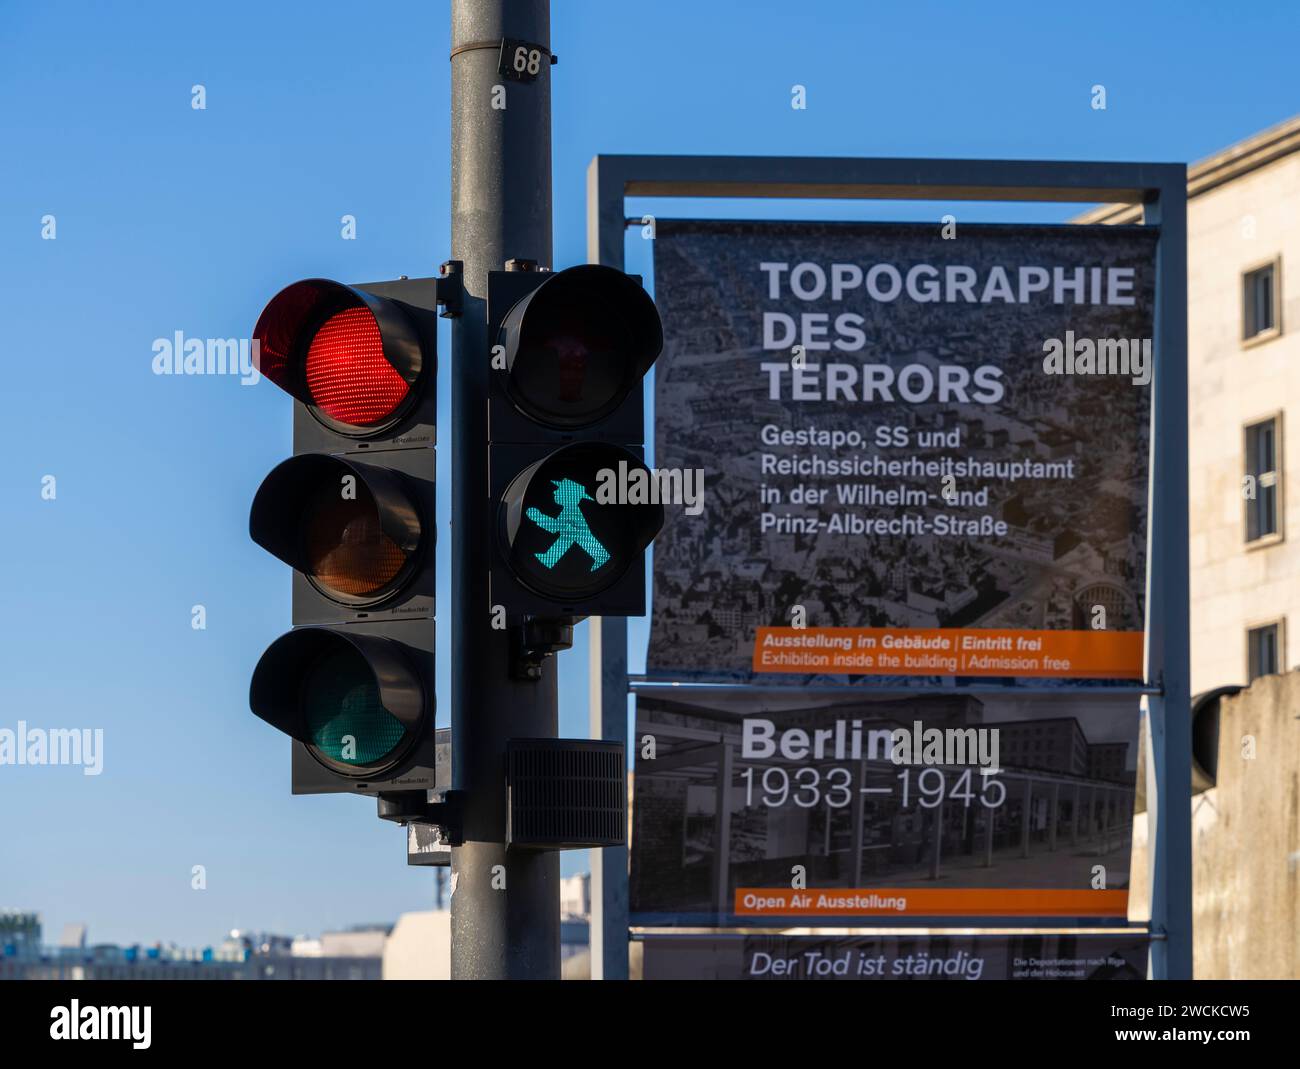 Historische Dauerausstellung Unter Freiem Himmel, Topographie Des Terrors, Niederkirchnerstraße, Berlin, Deutschland Stockfoto